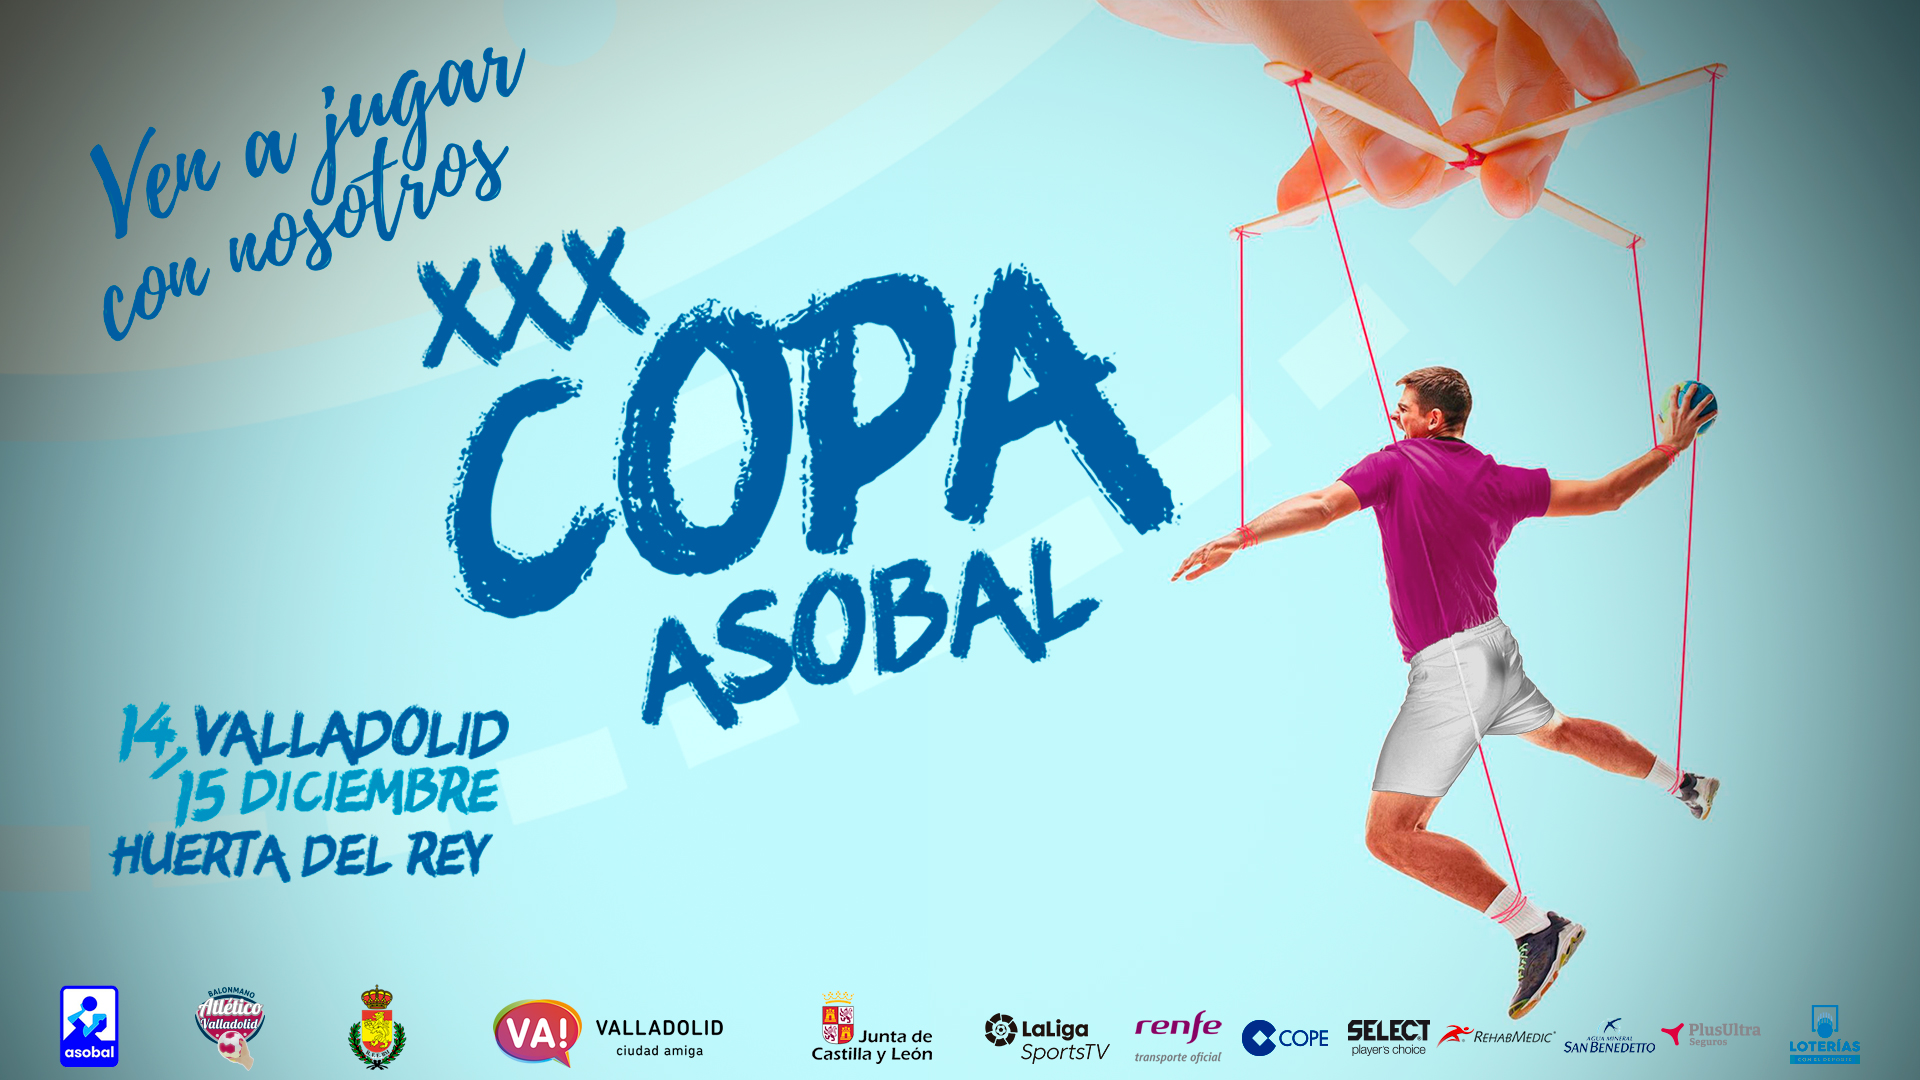 Abonos y entradas para la Copa Asobal